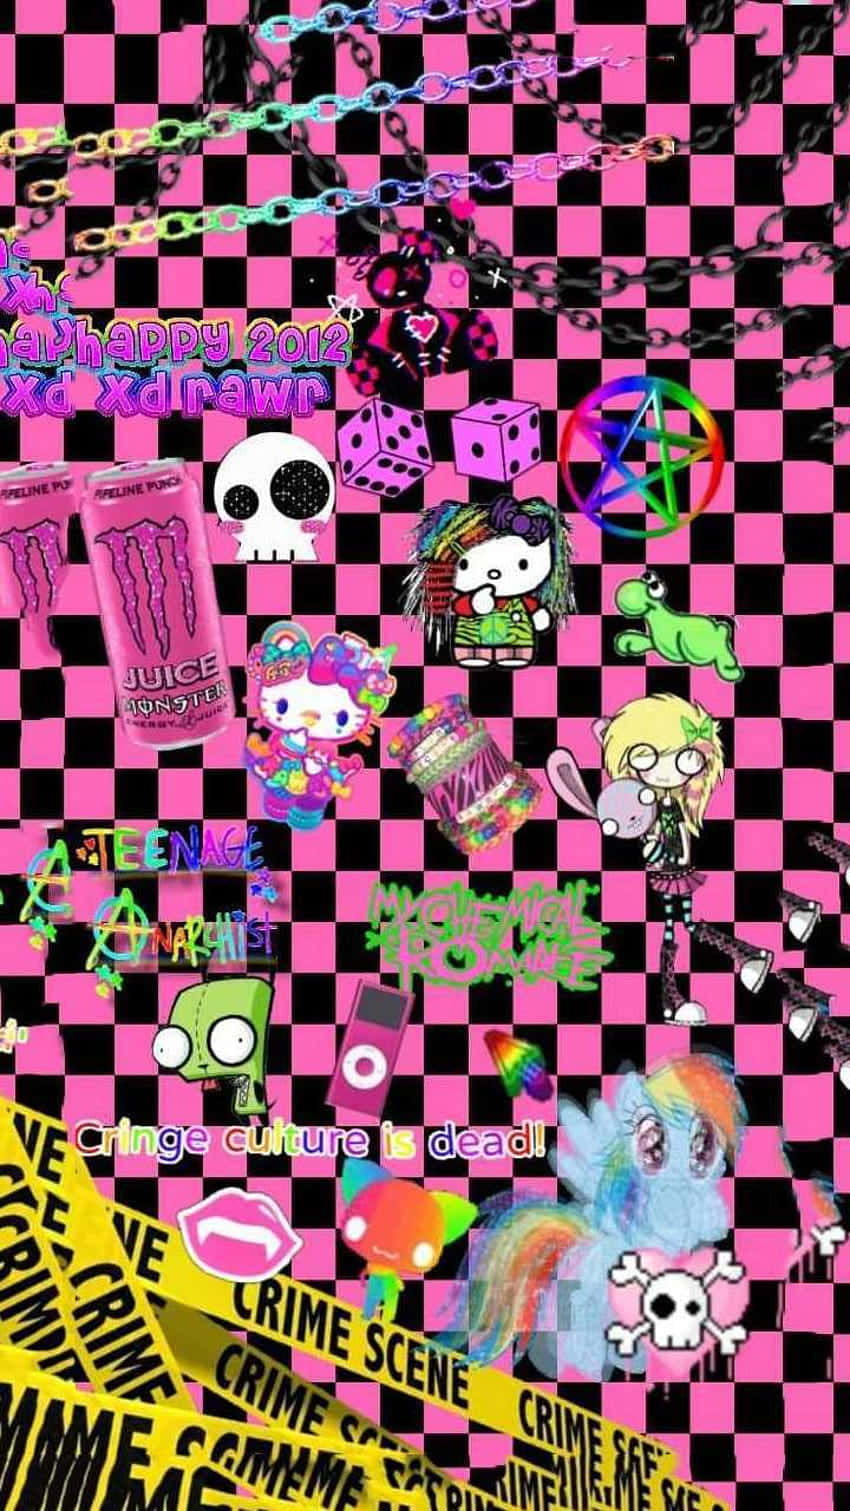 Weirdcore Pfp Of Pink Checkered Wallpaper